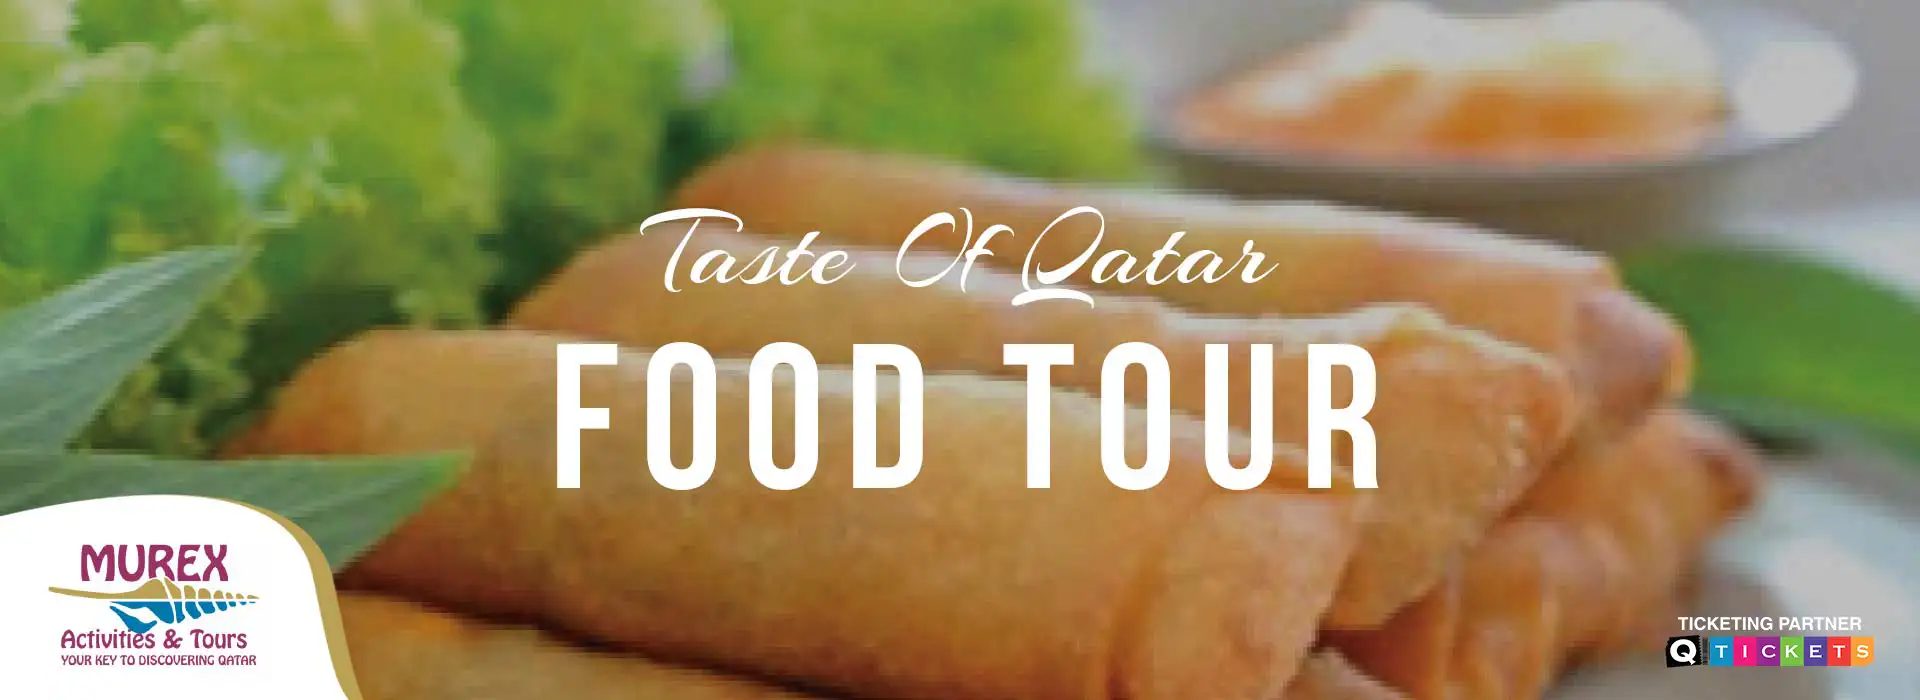 Taste of Qatar food tour (4 Hours)